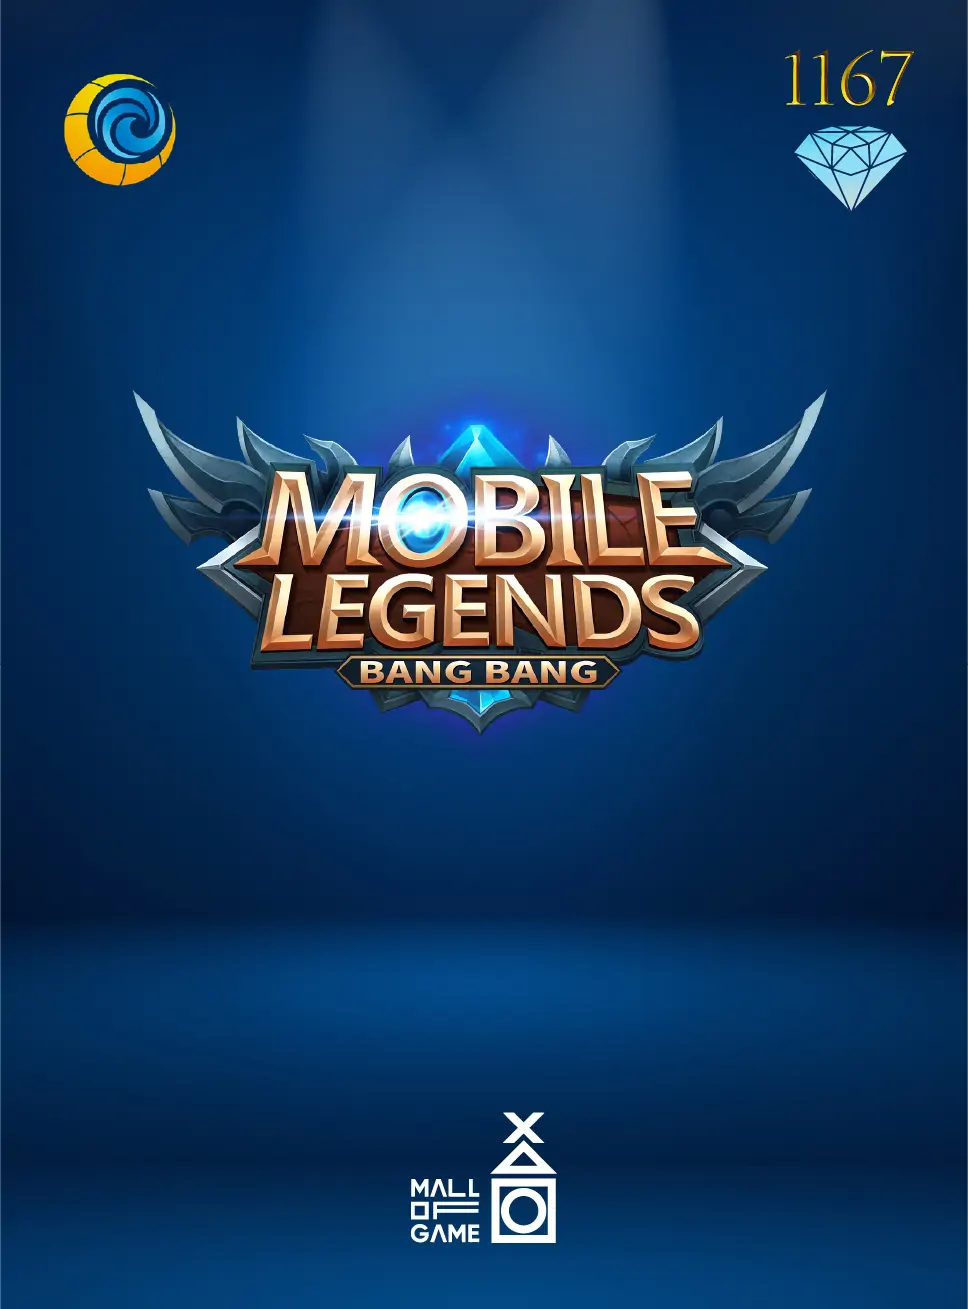 Mobile Legends 1167 Diamond